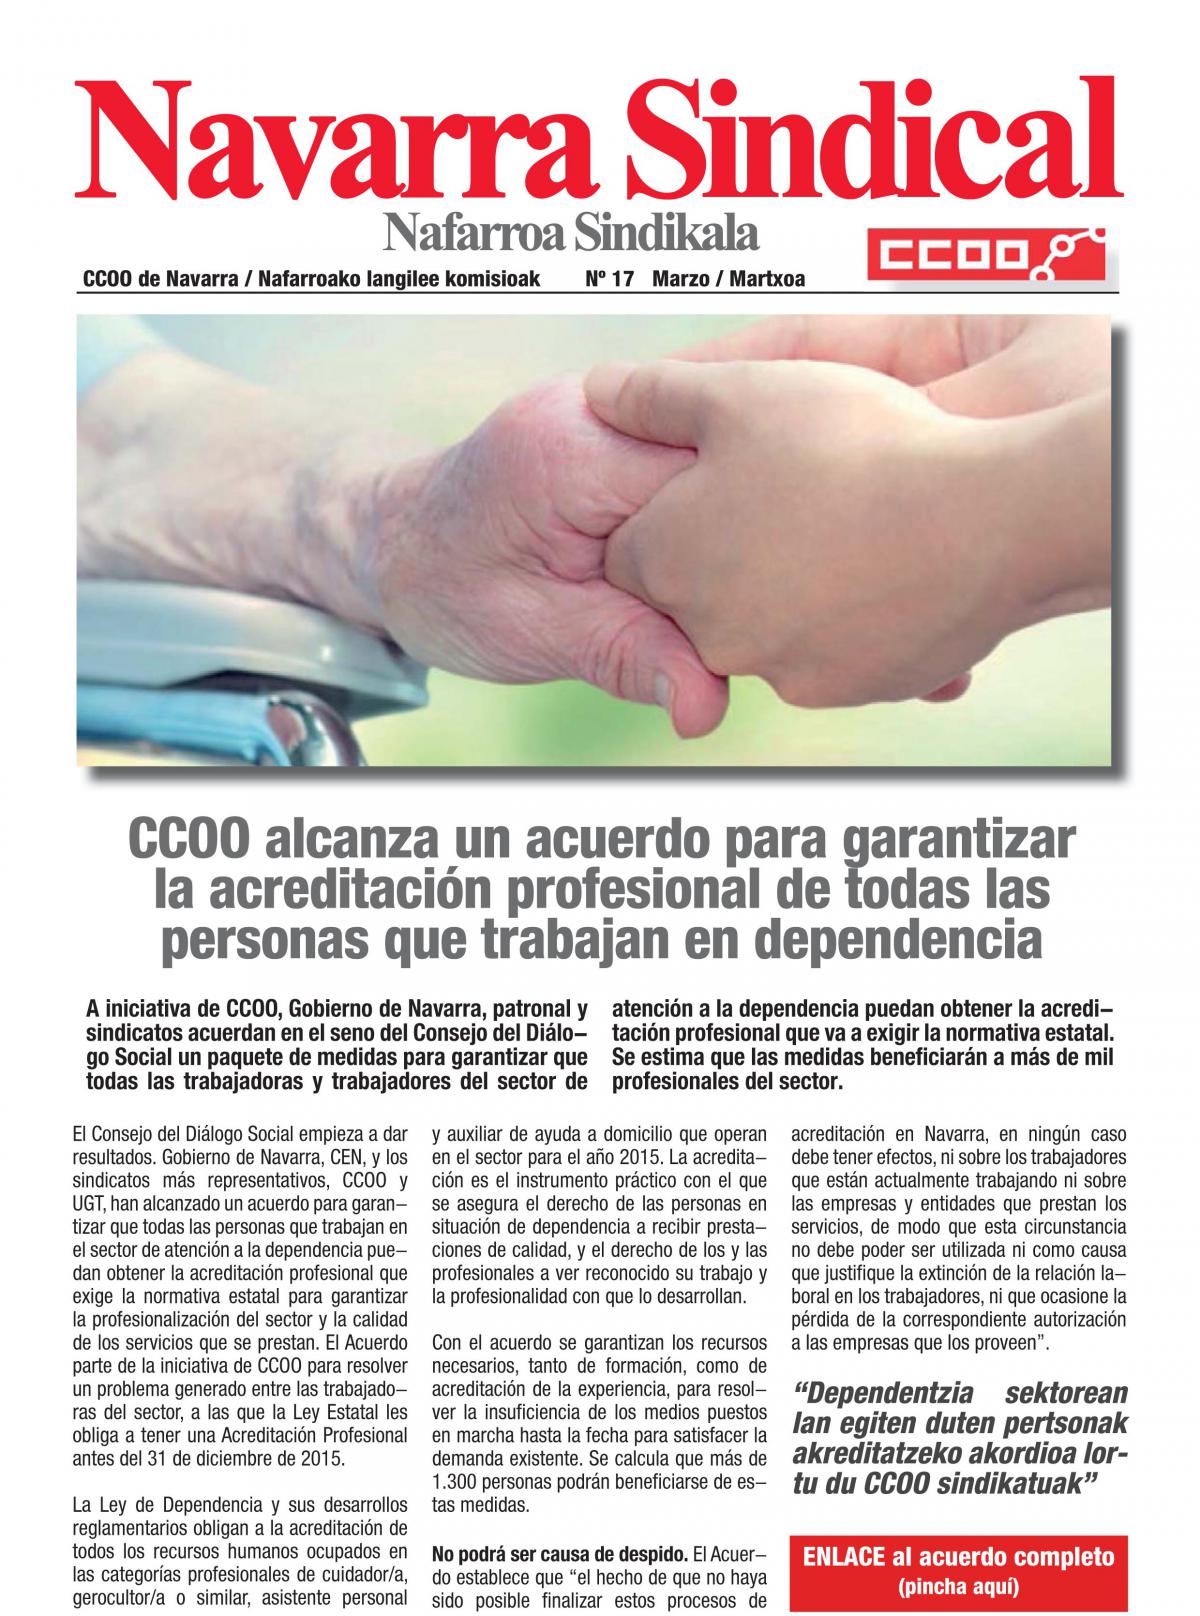 CCOO alcanza un acuerdo para garantizar la acreditacin profesional de todas las personas que trabajan en dependencia